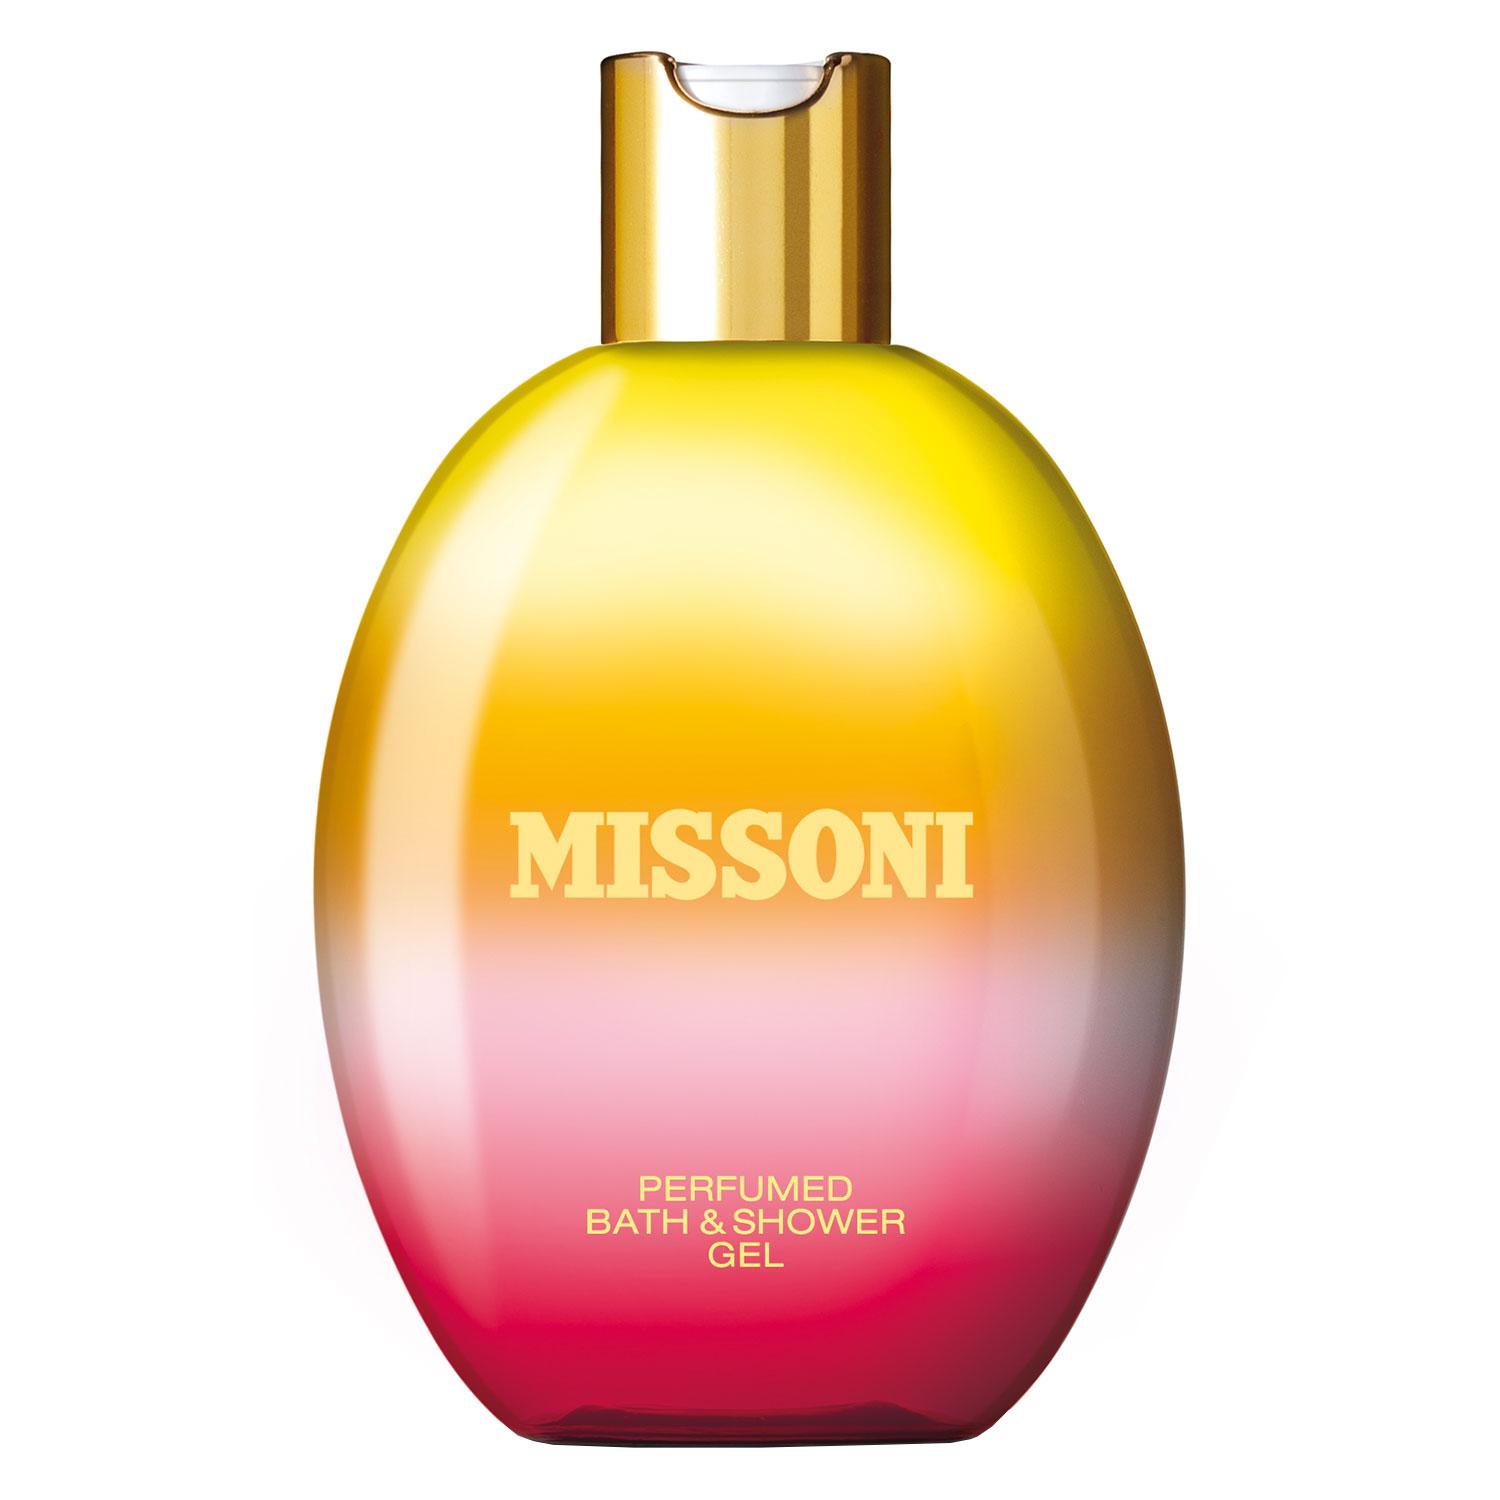 Missoni Femme - Bath & Shower Gel